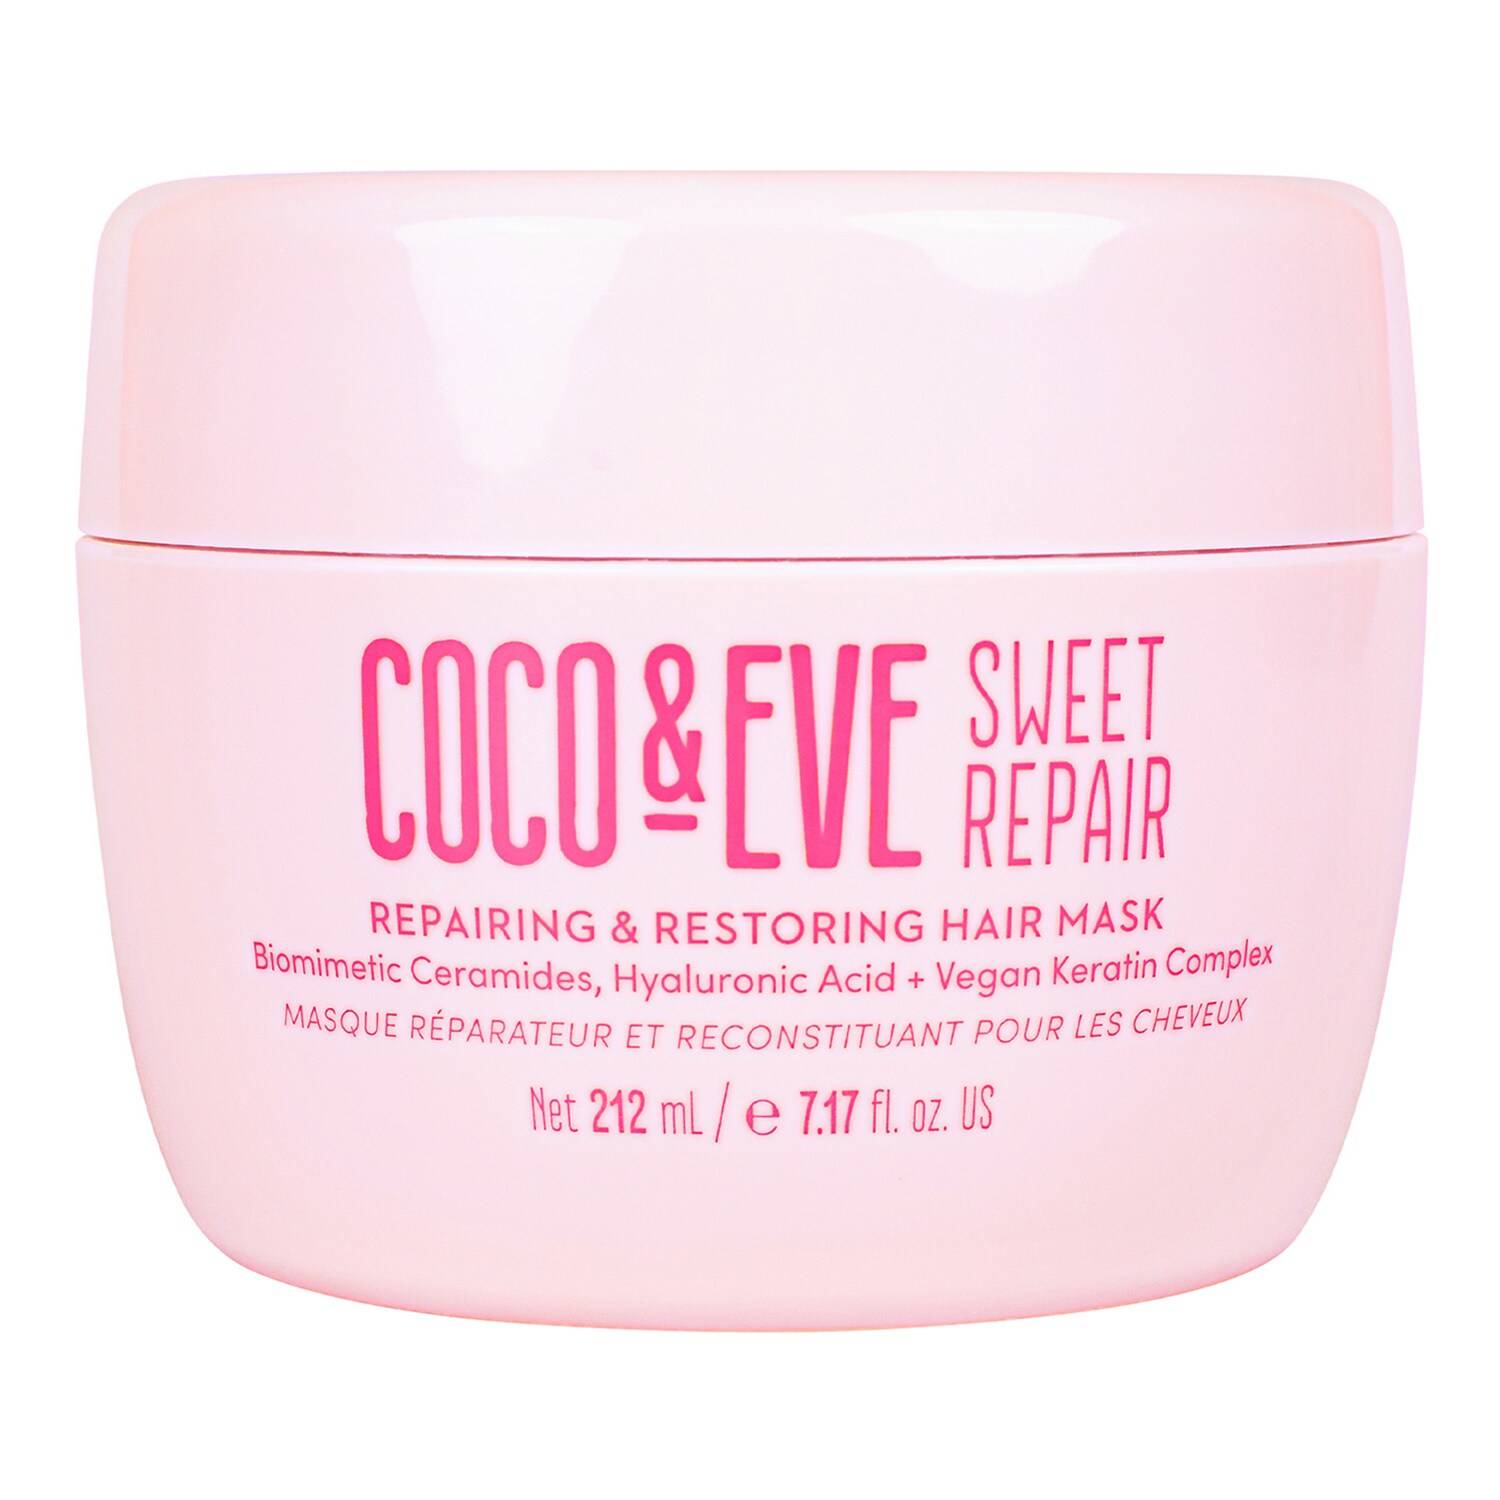 Coco & Eve Sweet Repair Repairing & Restoring Hair Mask 212Ml